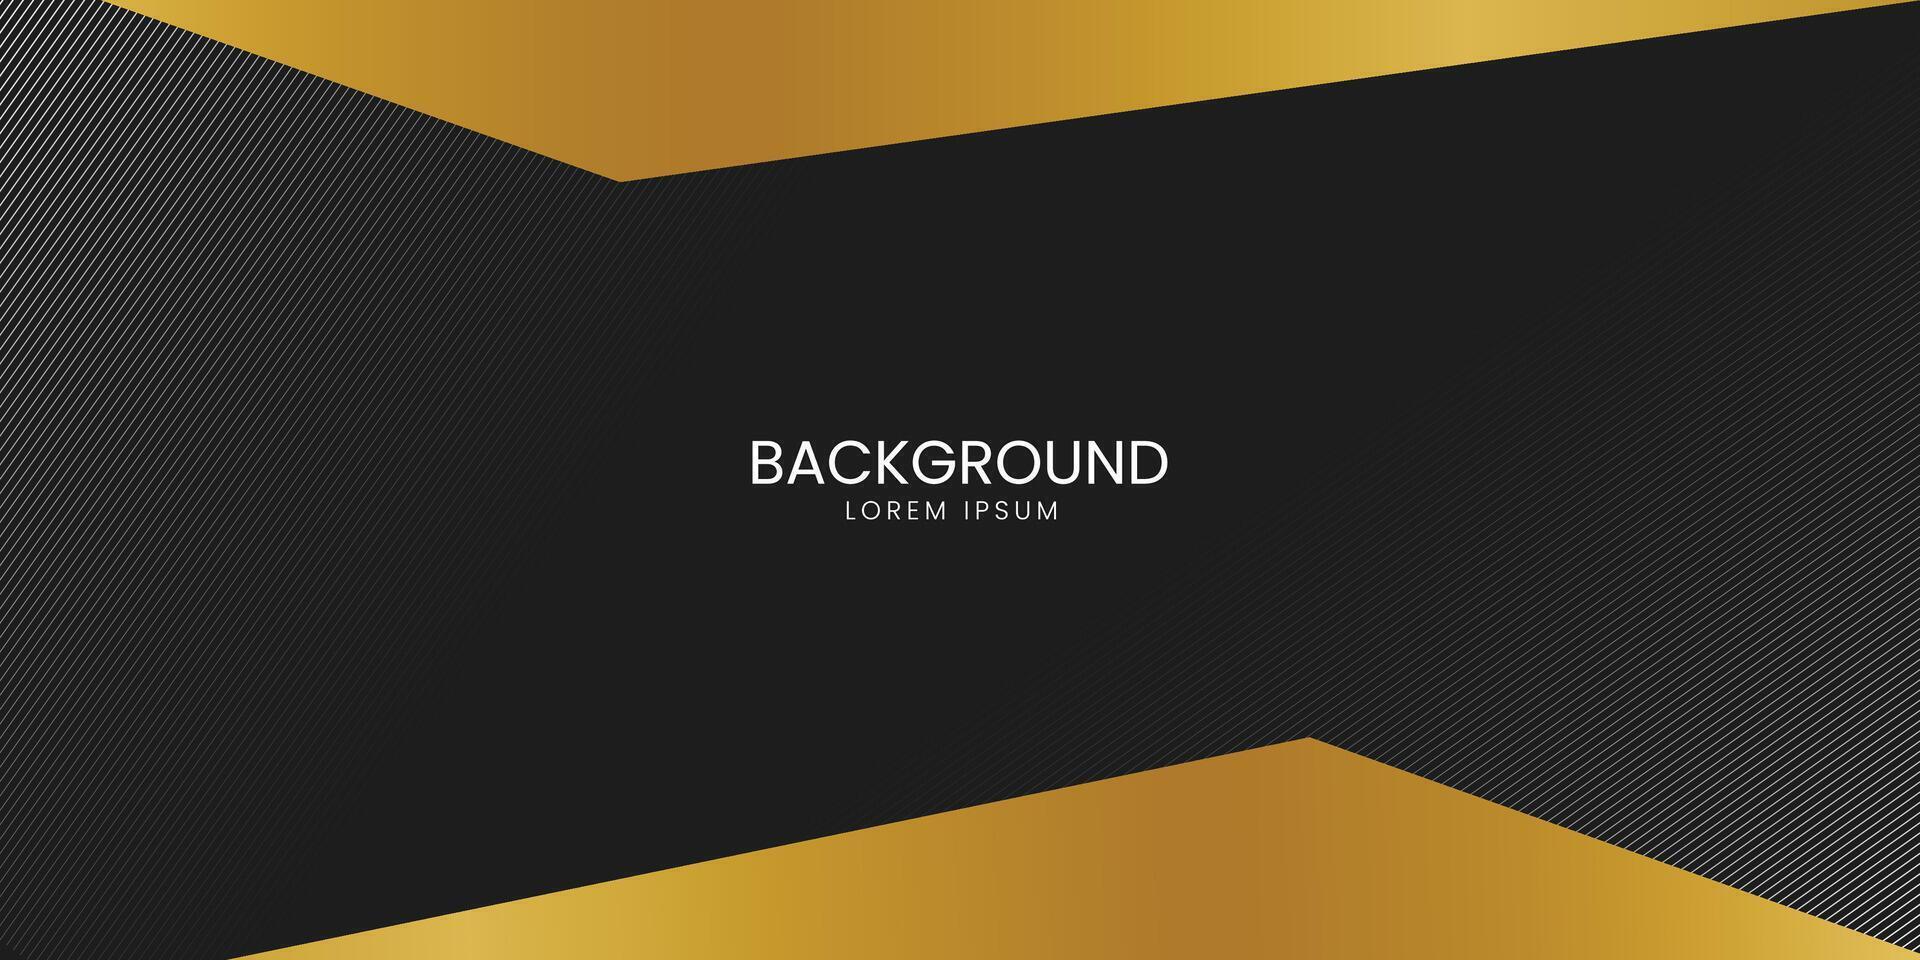 fondo premium negro con elementos geométricos dorados oscuros de lujo. rico fondo para afiches, pancartas, volantes, etc. vector eps